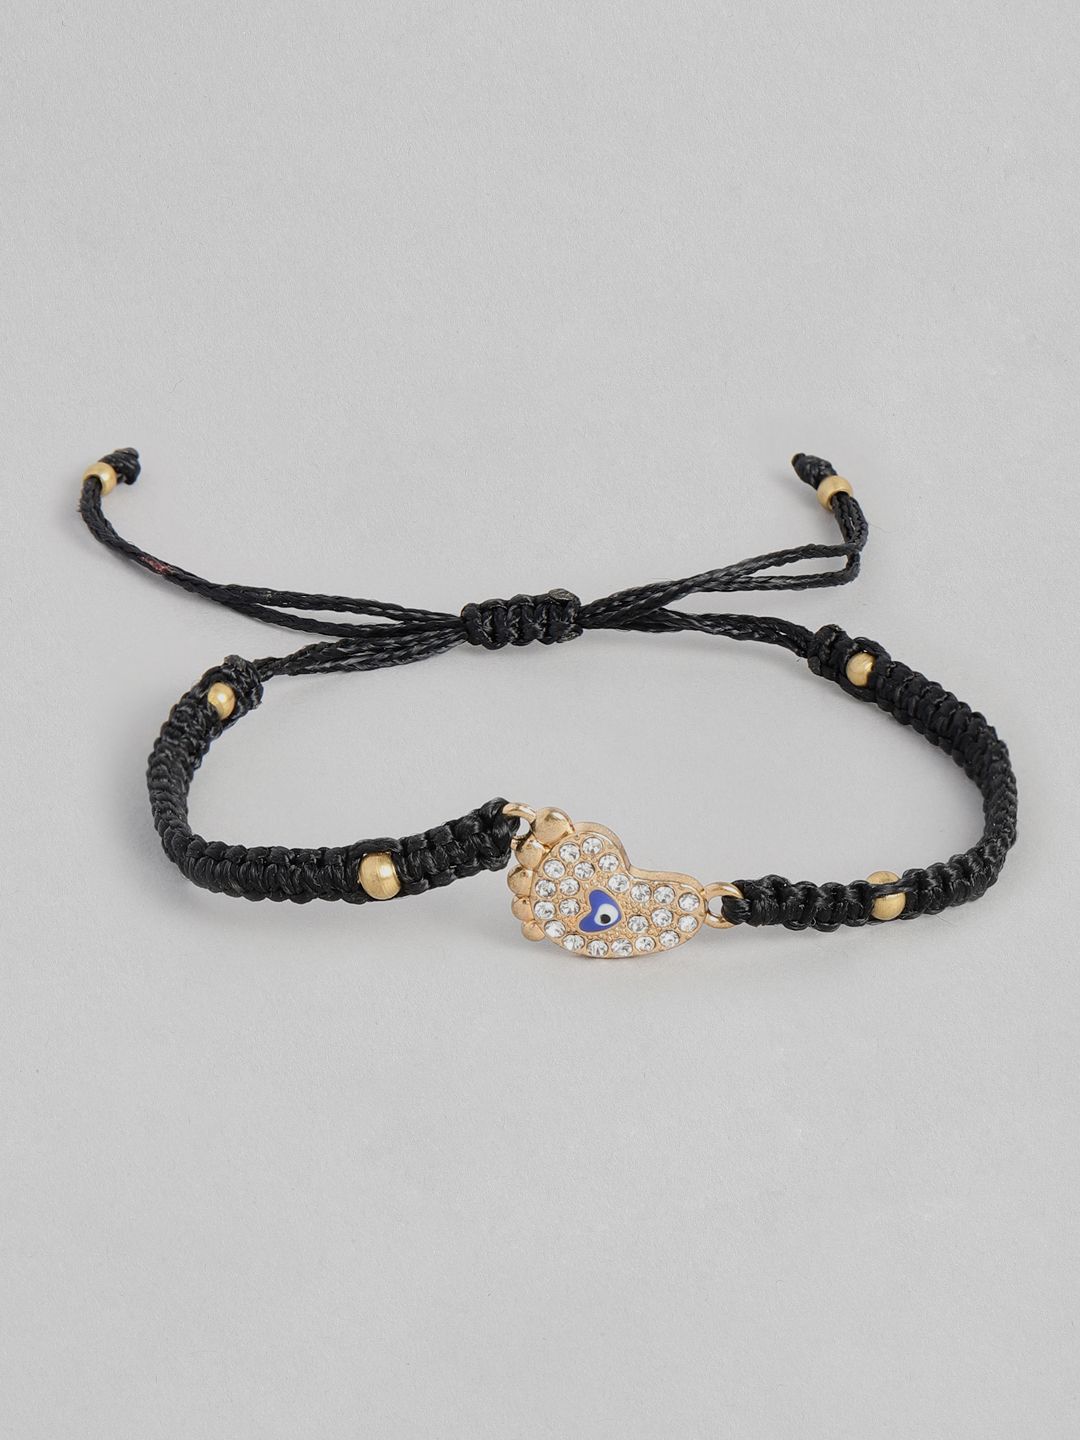 EL REGALO Unisex Black & Gold-Toned Evil Eye Charm Bracelet Price in India